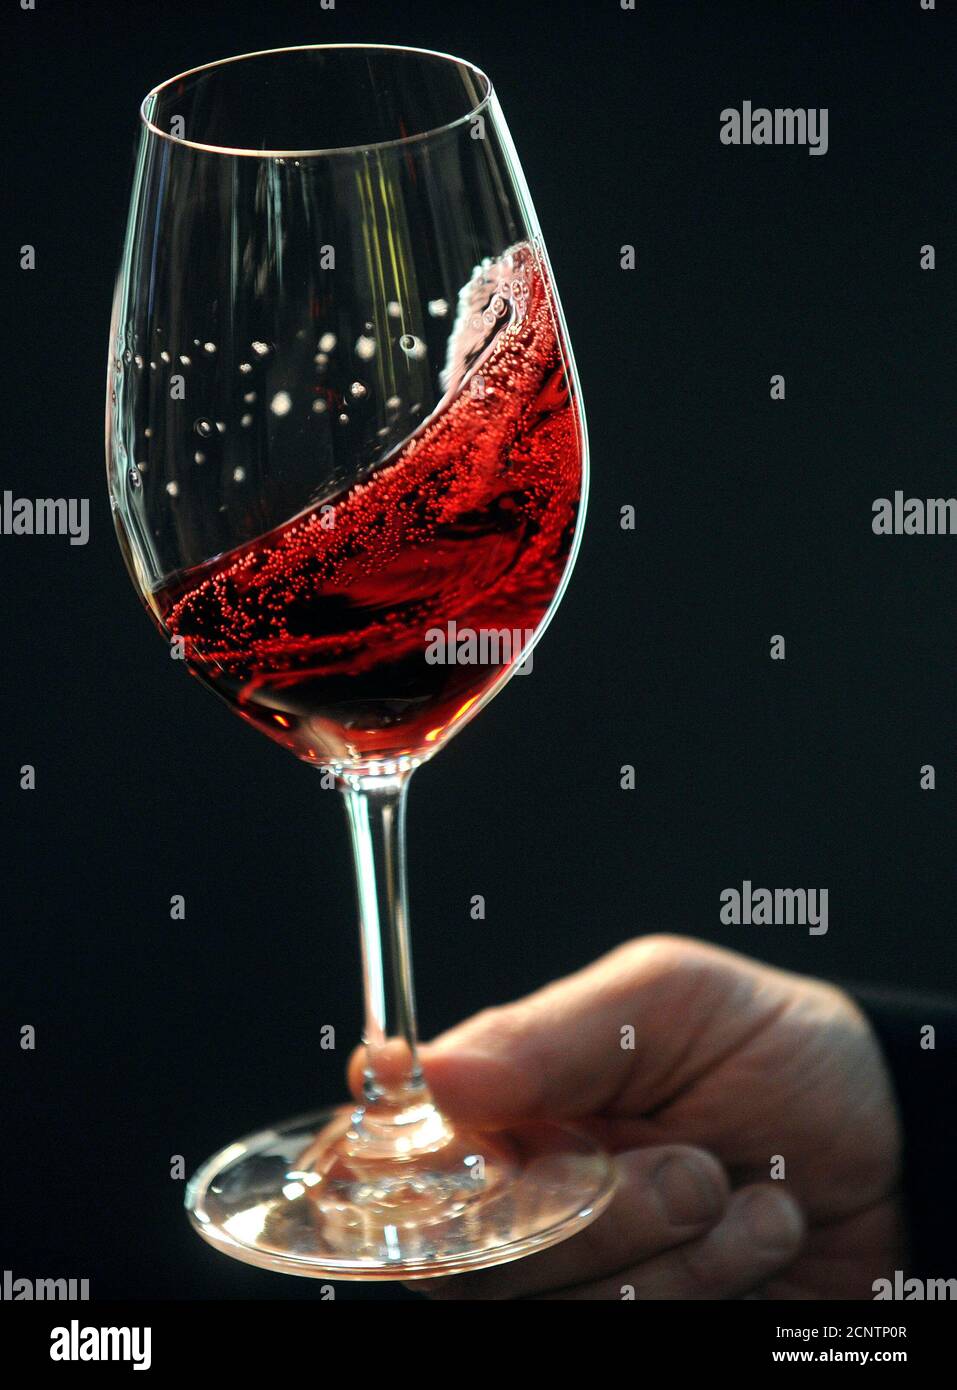 Ein Mann hält ein Glas Rotwein auf der Vinitaly Wein-Expo in Verona 8.  April 2010. Italien, die weltweit zweitgrößte Weinproduzent nach  Frankreich, hatte von ca. 4,5 Milliarden Liter (989,9 Millionen Imp  Gallonen)